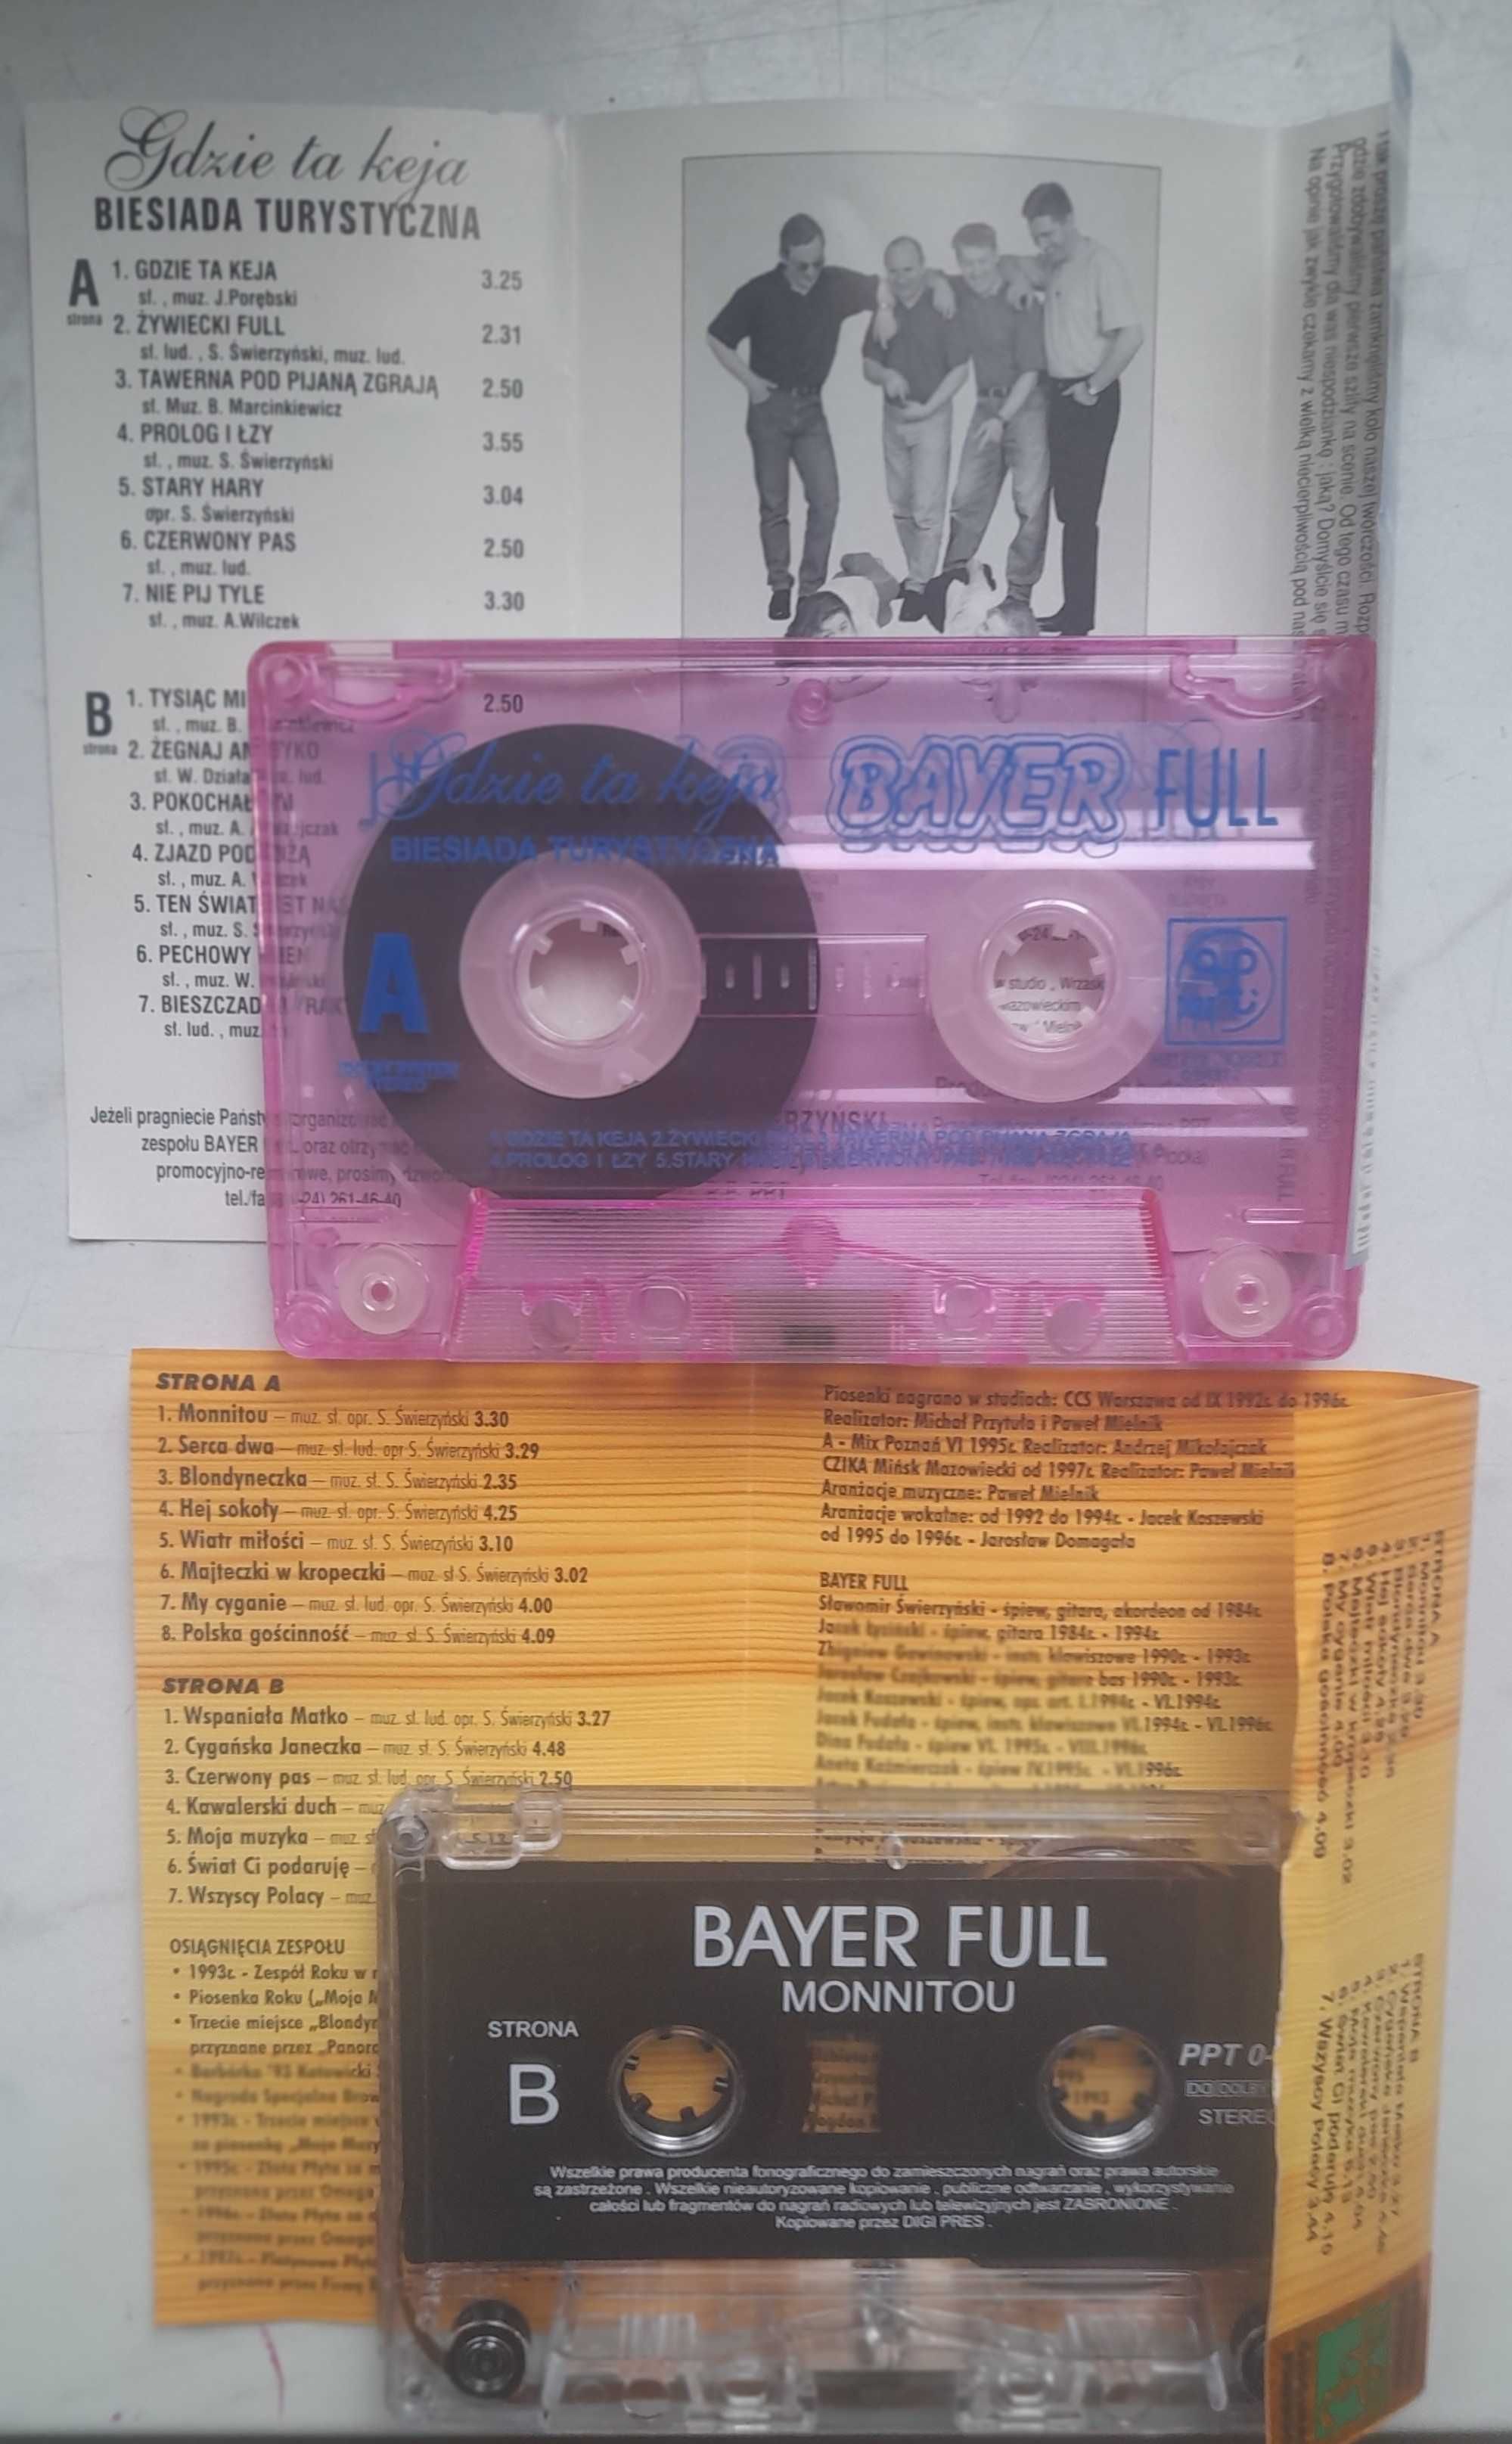 Bayer Full - 2 kasety ("Monnitou" i "Gdzie ta keja")